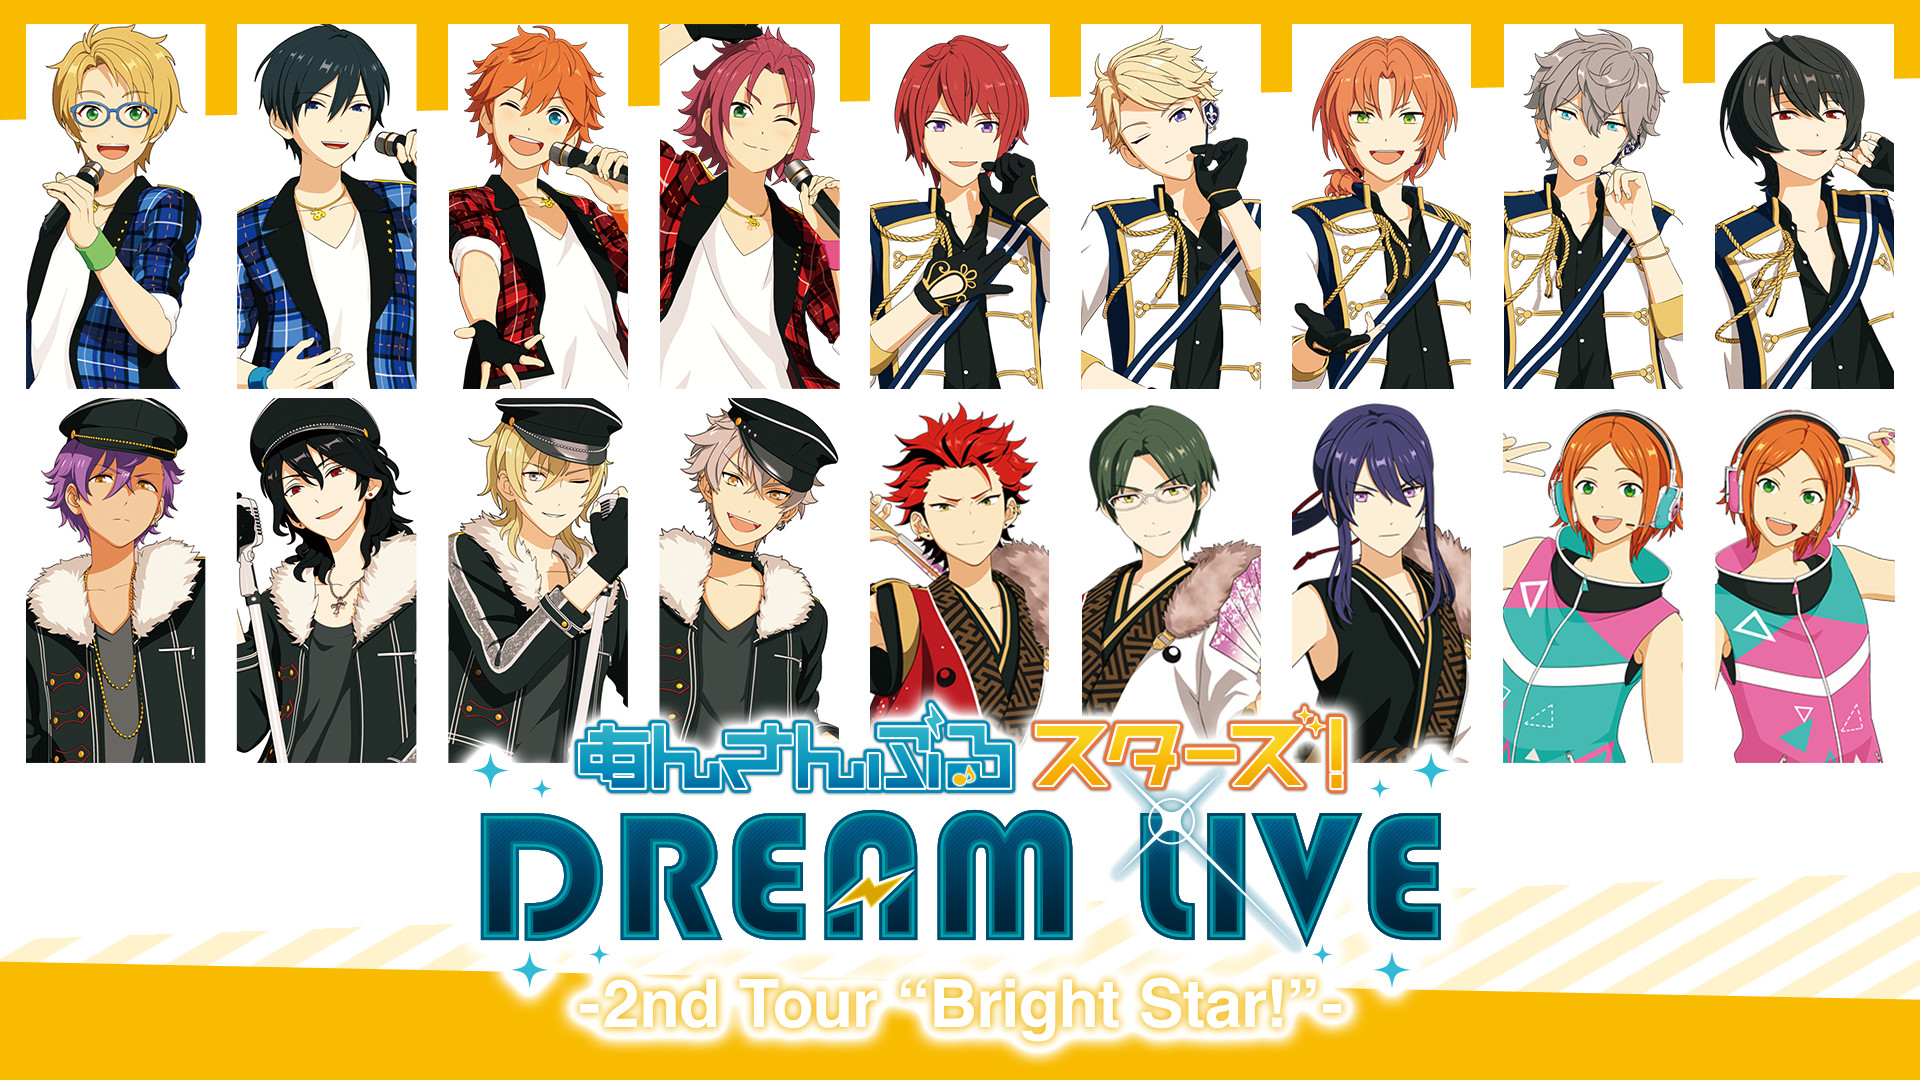 あんさんぶるスターズ！DREAM LIVE -2nd Tour “Bright Star!”- 大阪 